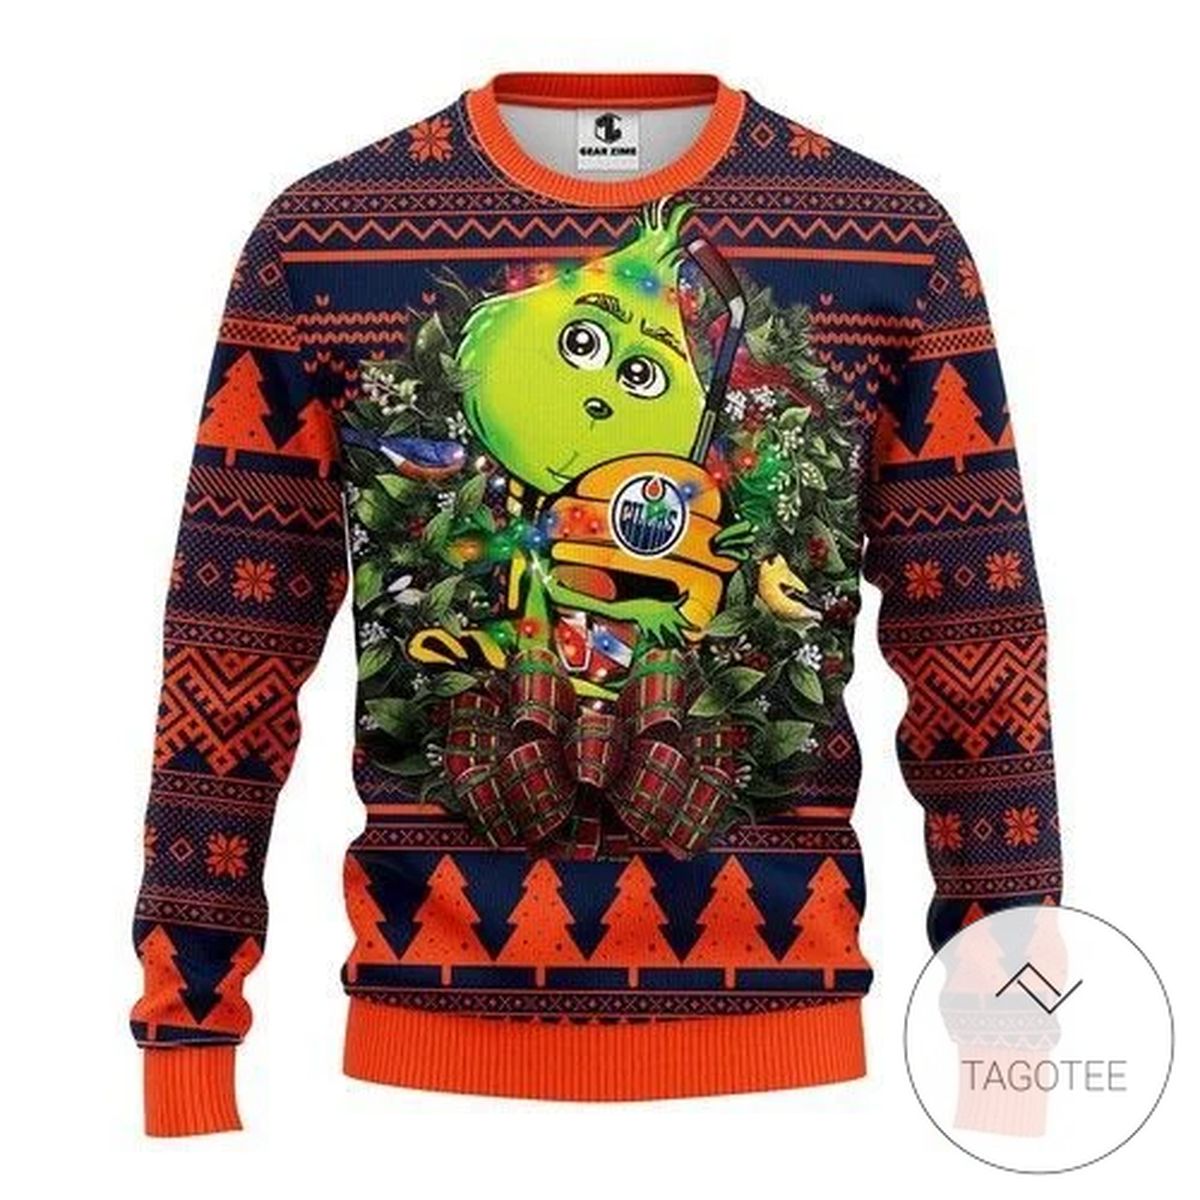 Nhl Edmonton Oilers Grinch Hug Sweatshirt Knitted Ugly Christmas Sweater